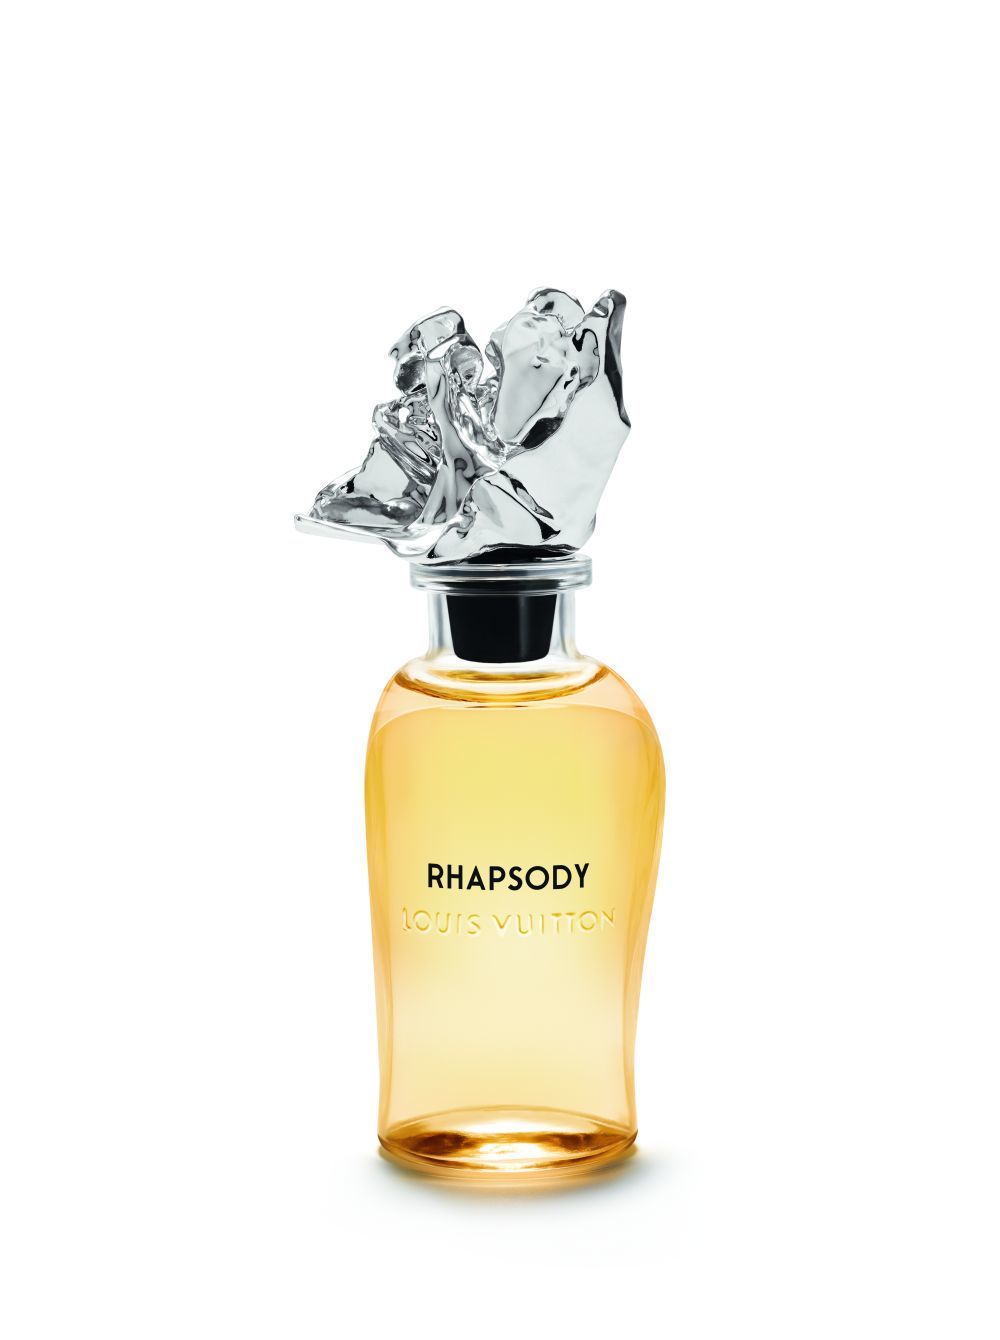 Extracto de perfume Rhapsody de Louis Vuitton.